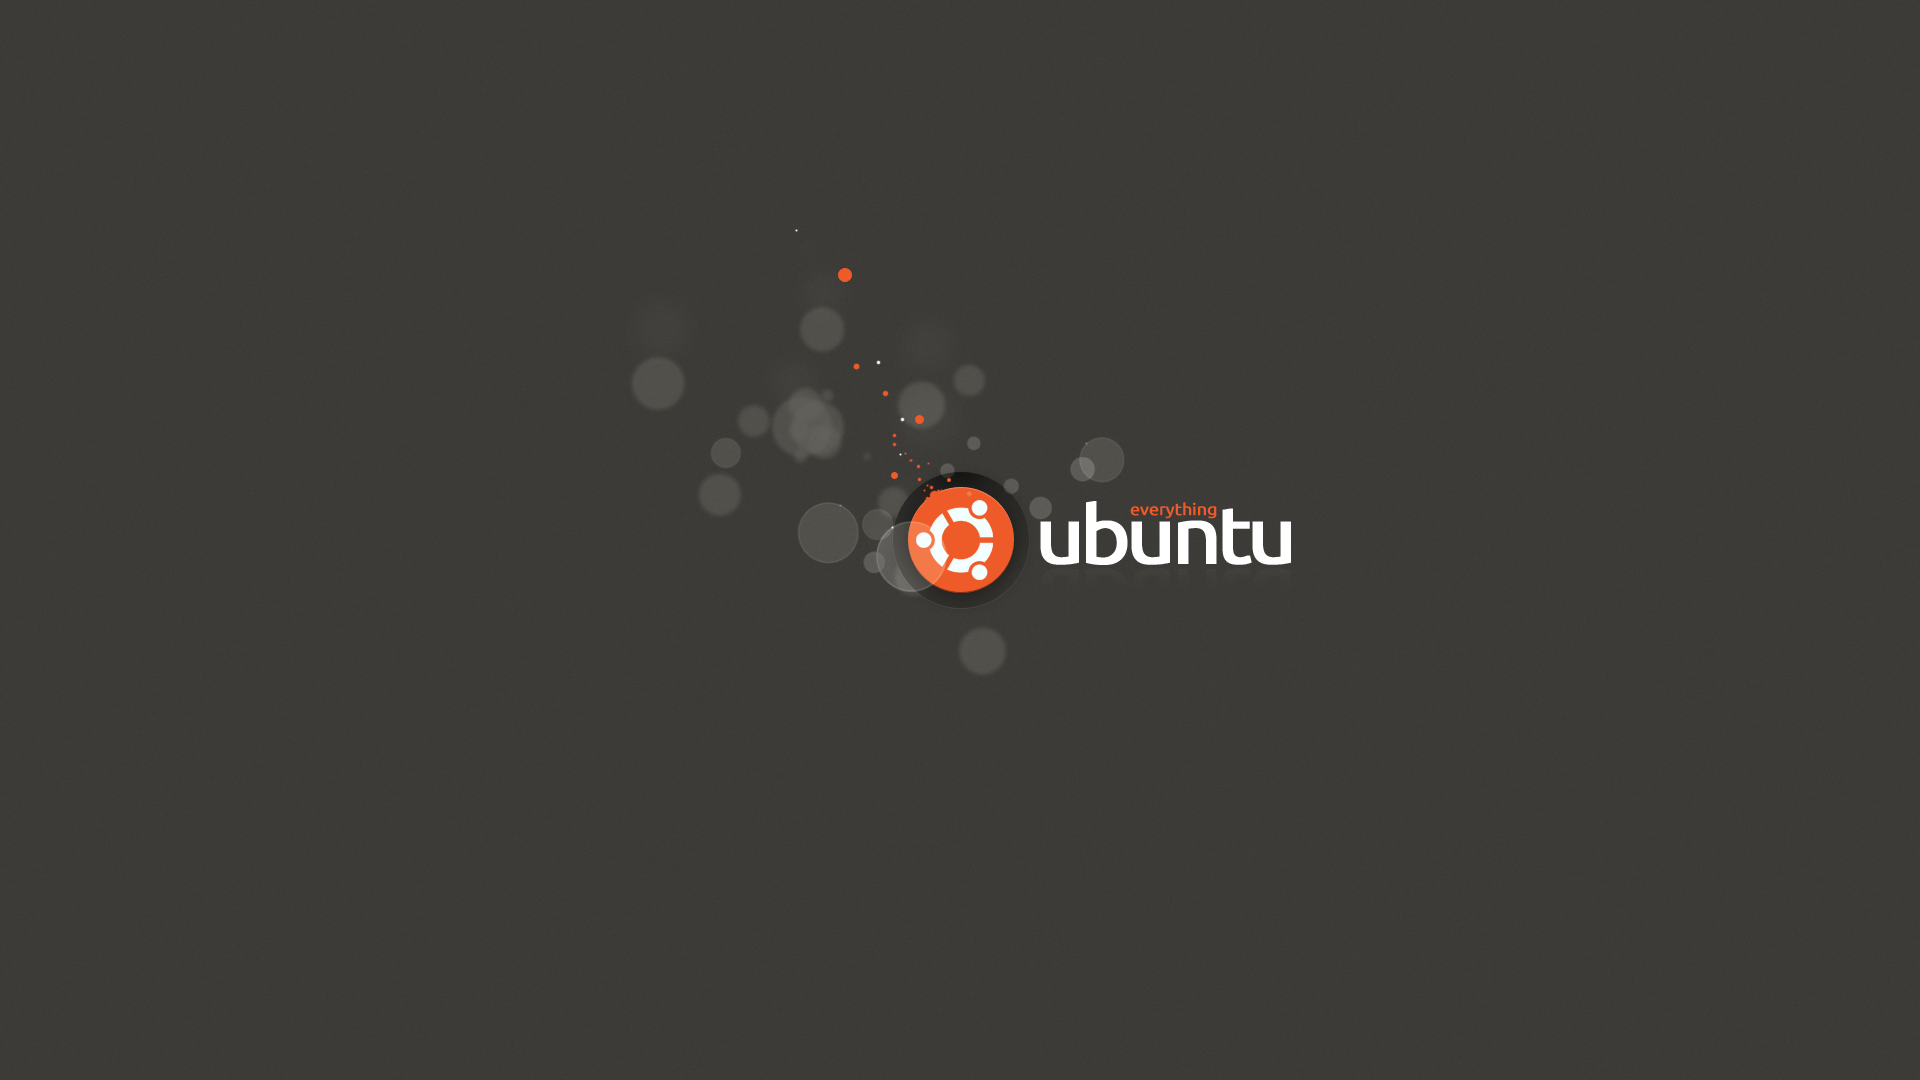 Logo của Ubuntu - biểu tượng của sự tự do, sáng tạo và phát triển bền vững. Một hình ảnh độc đáo và đẹp mắt mà ai cũng nên chiêm ngưỡng. Nhấp chuột để xem tất cả các hình ảnh liên quan đến logo của Ubuntu.